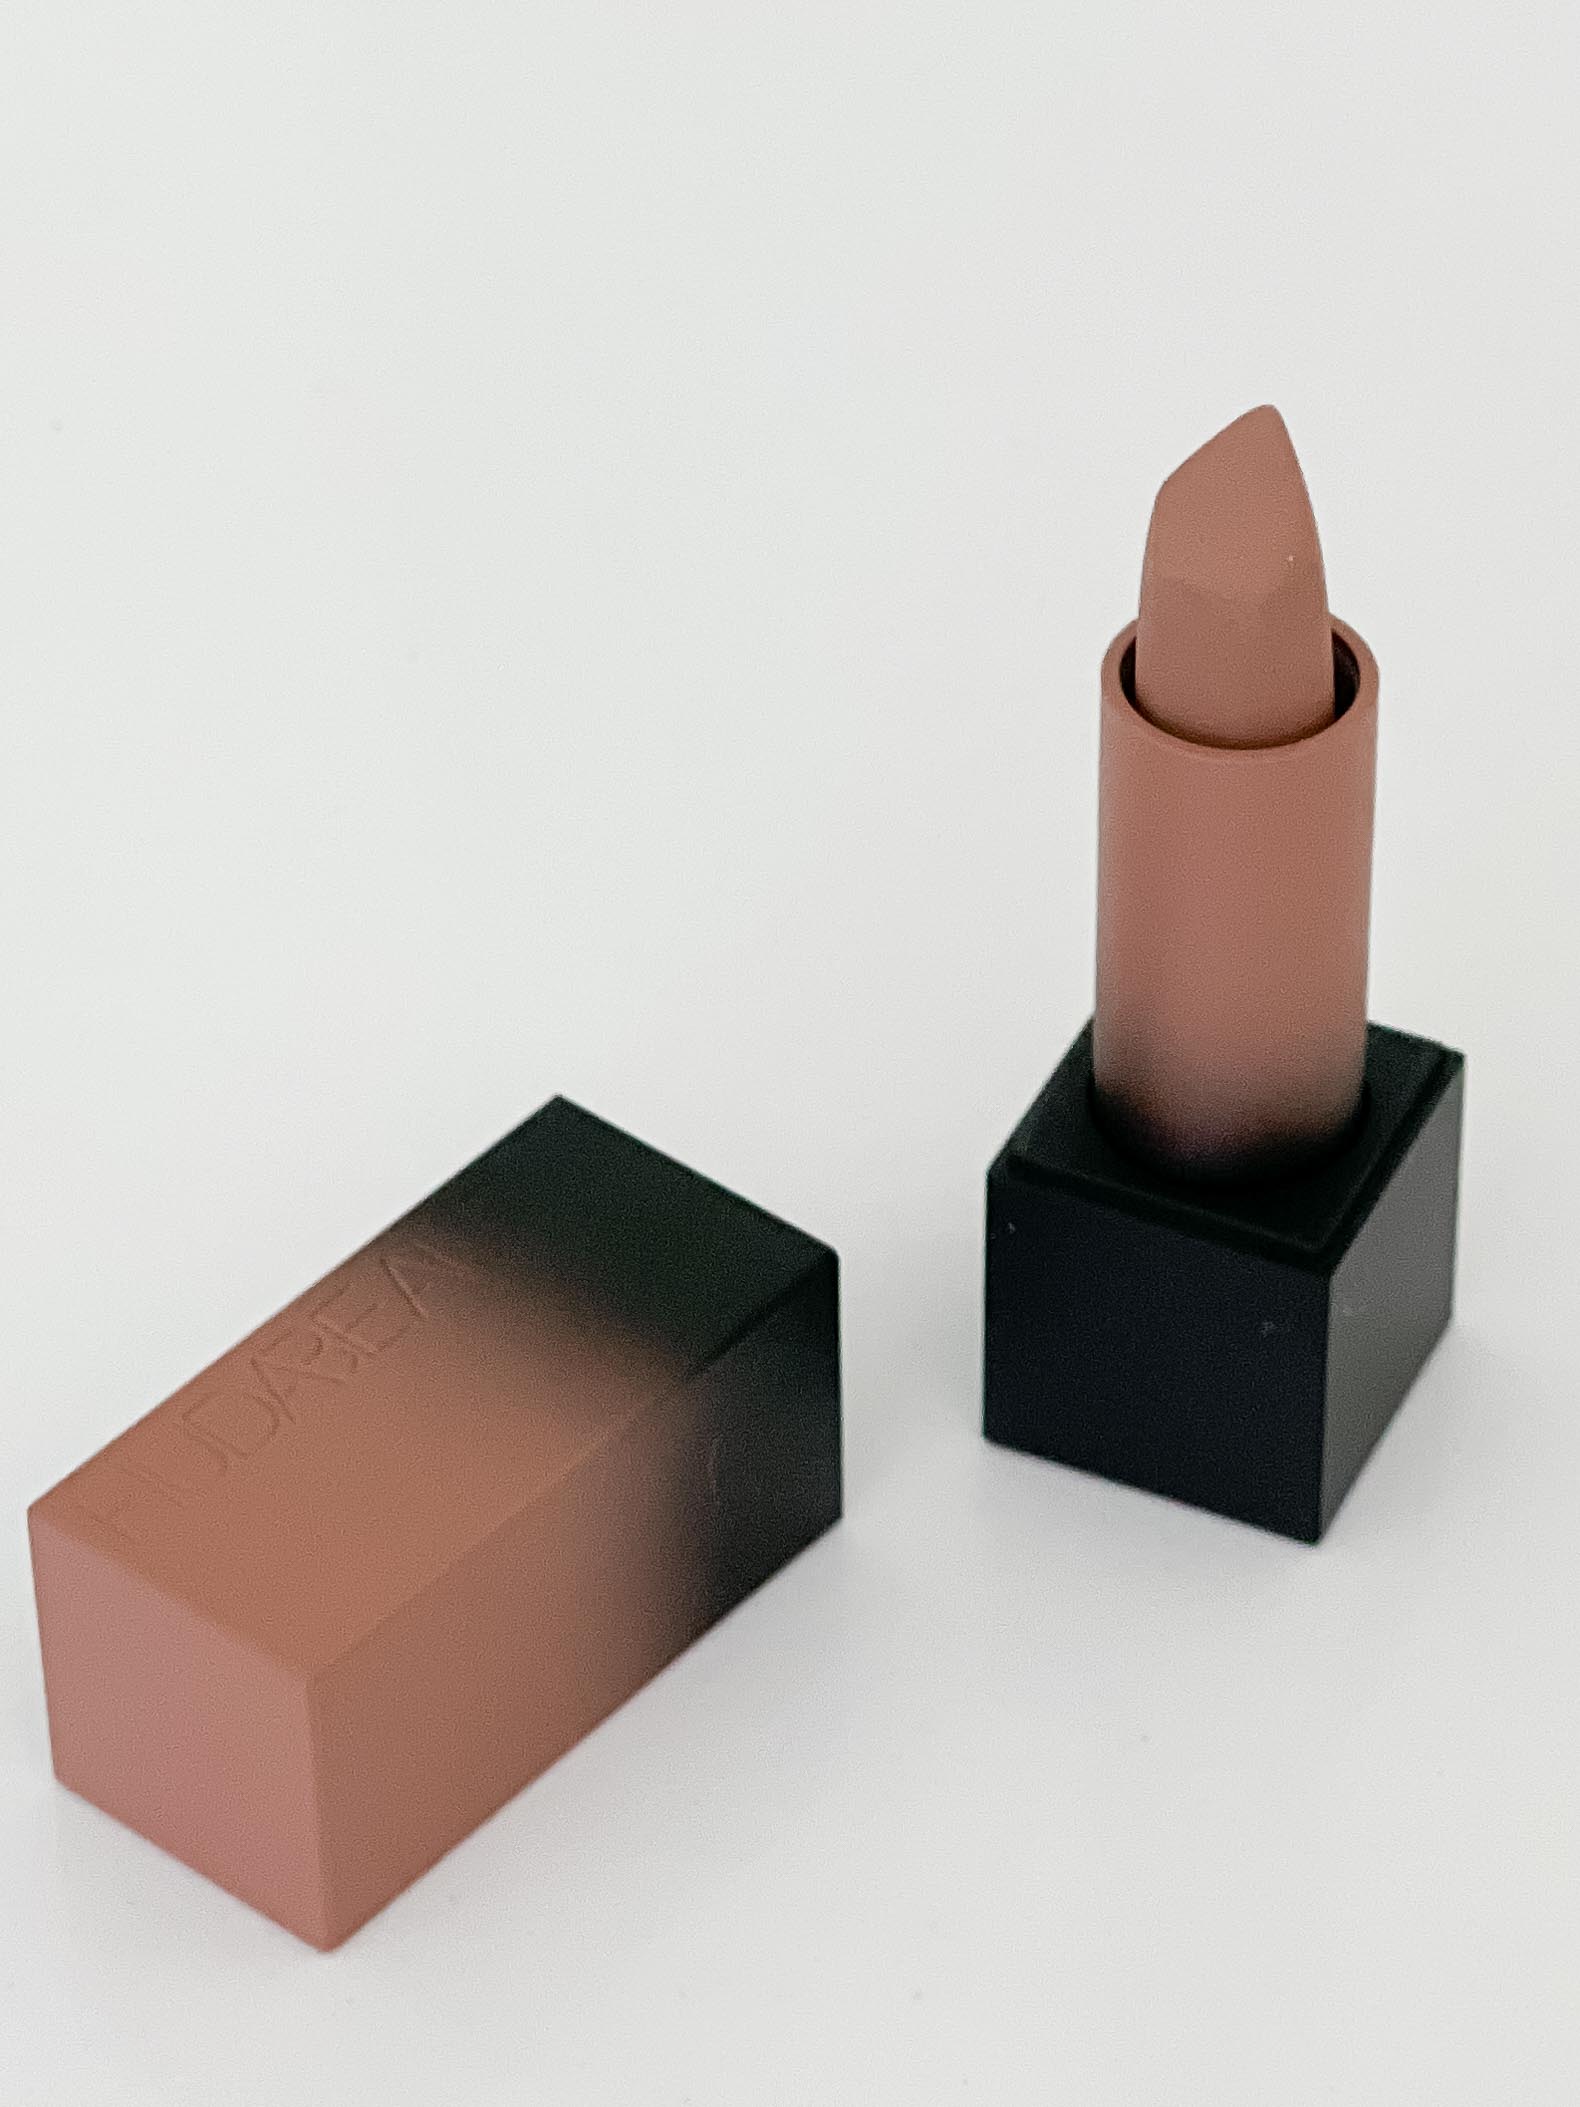 Best Nude Lipstick: Huda Beauty Lipstick in Staycation